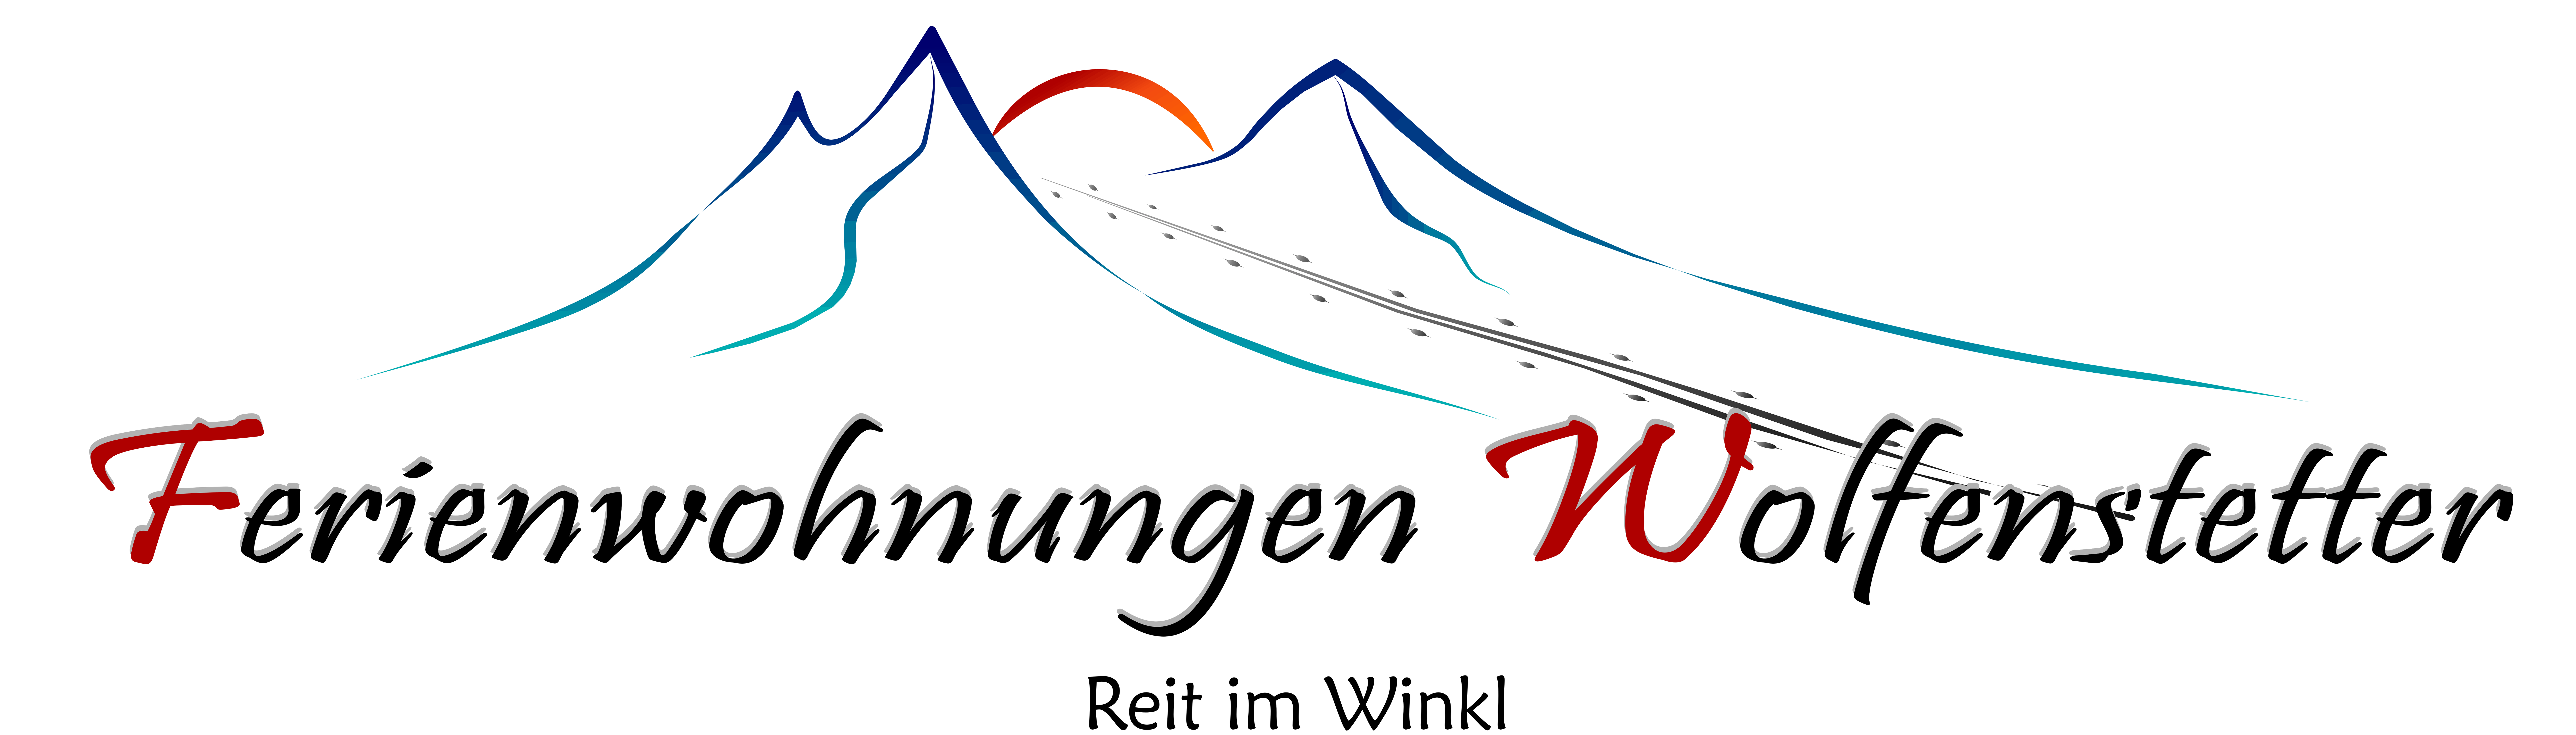 Logo Freienwohnungen Wolfenstetter- Ferienwohnungen Wolfenstetter in Reit im Winkl